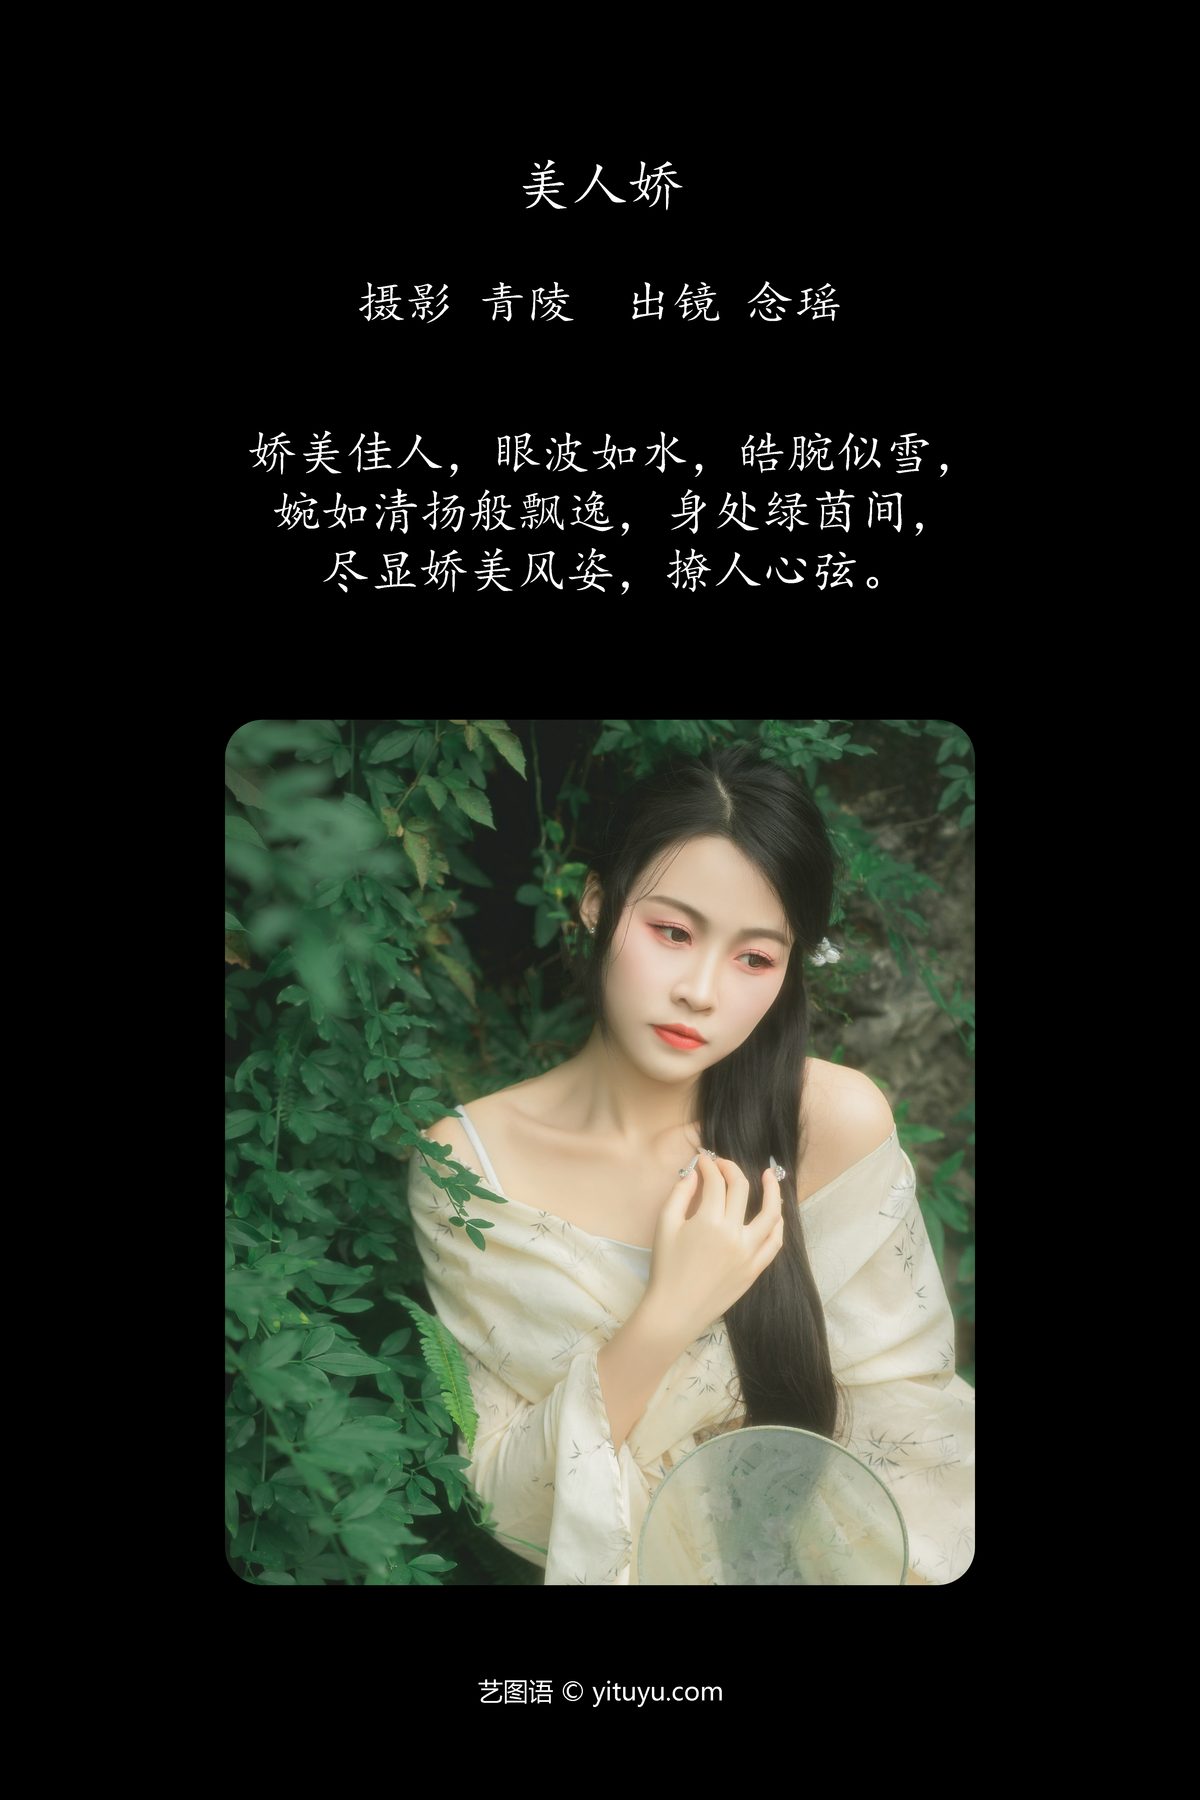 YiTuYu艺图语 Vol 5761 Nian Yao 0002 8472560047.jpg